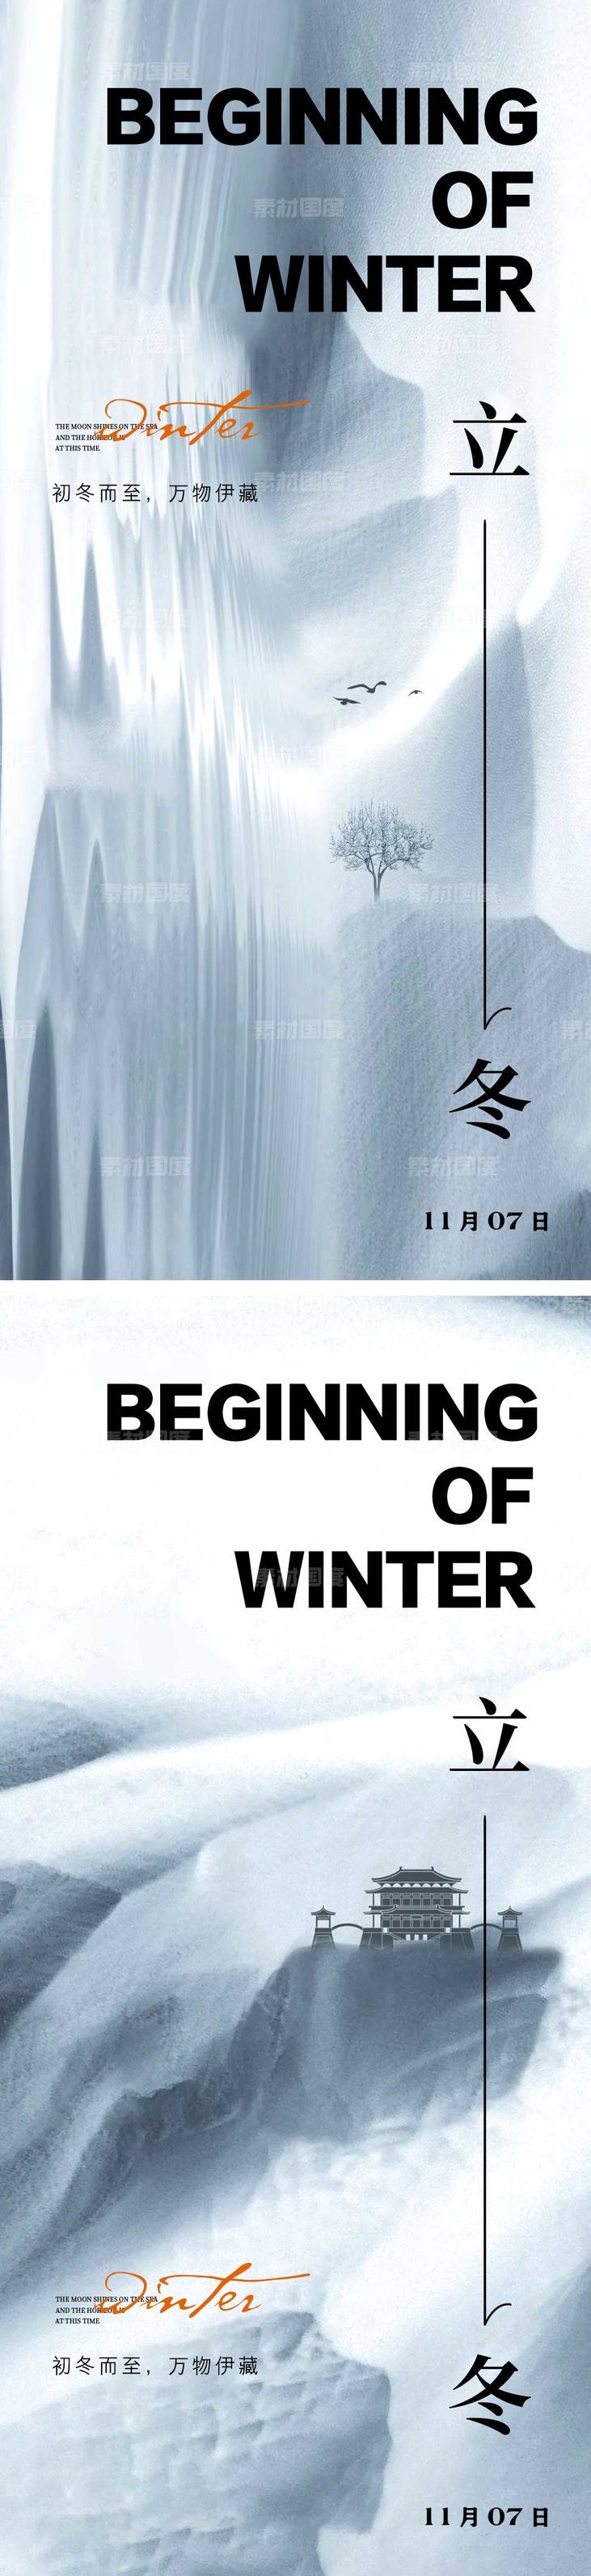 立冬节气海报 中国二十四时节气